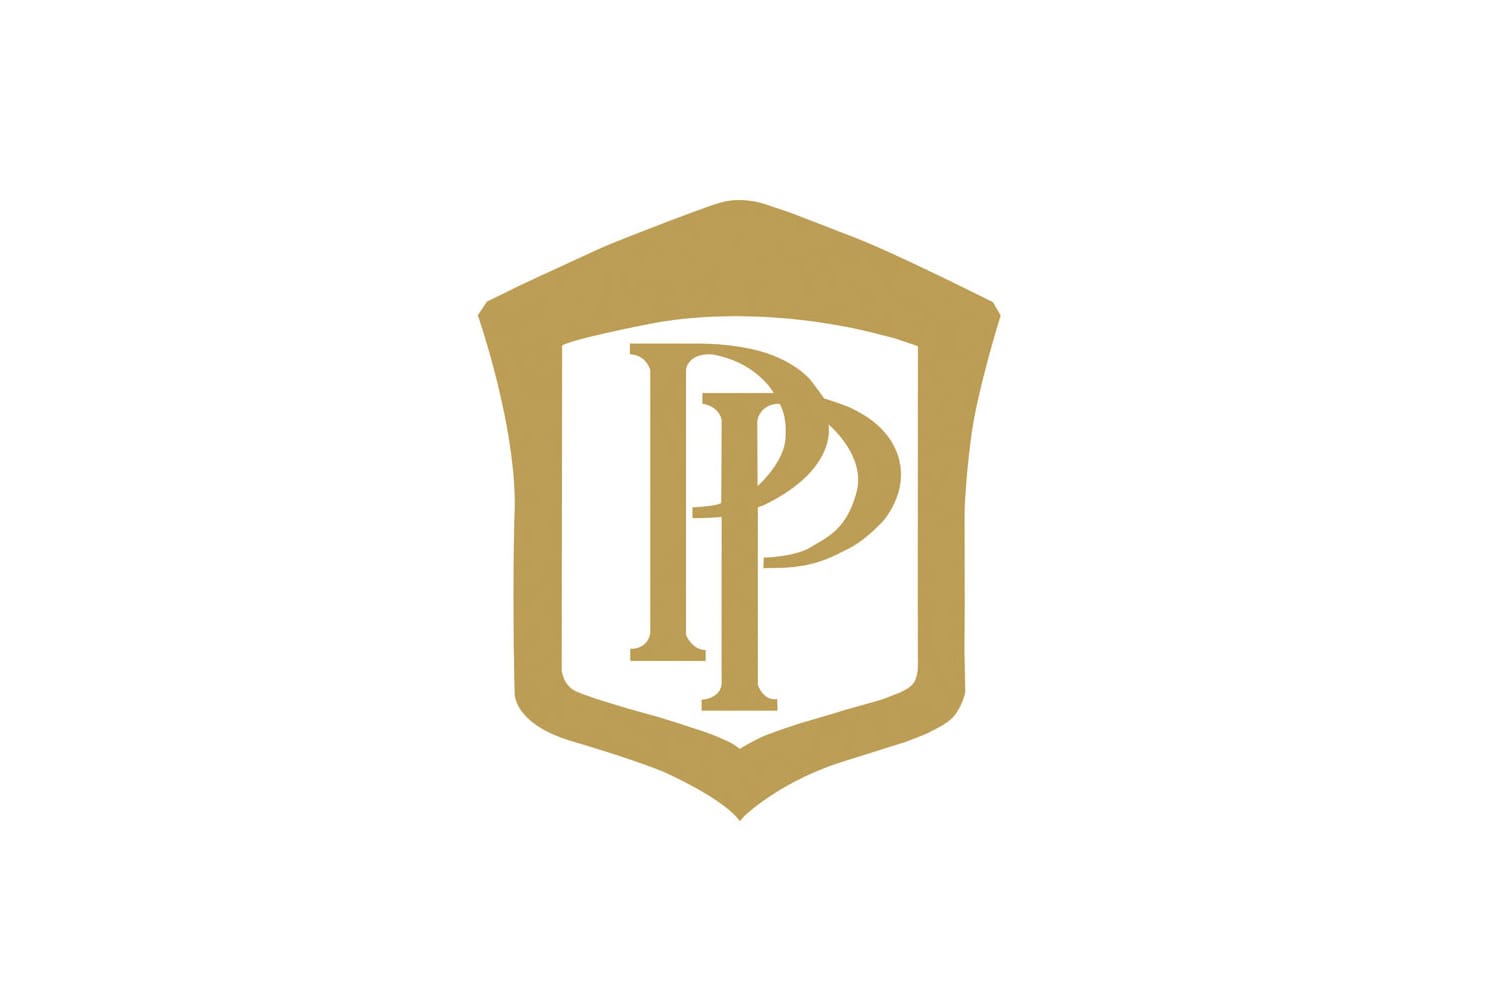 Seit 2009 ersetzt man bei Patek Philippe das Genfer Siegel durch das hauseigne Patek Philippe Siegel.